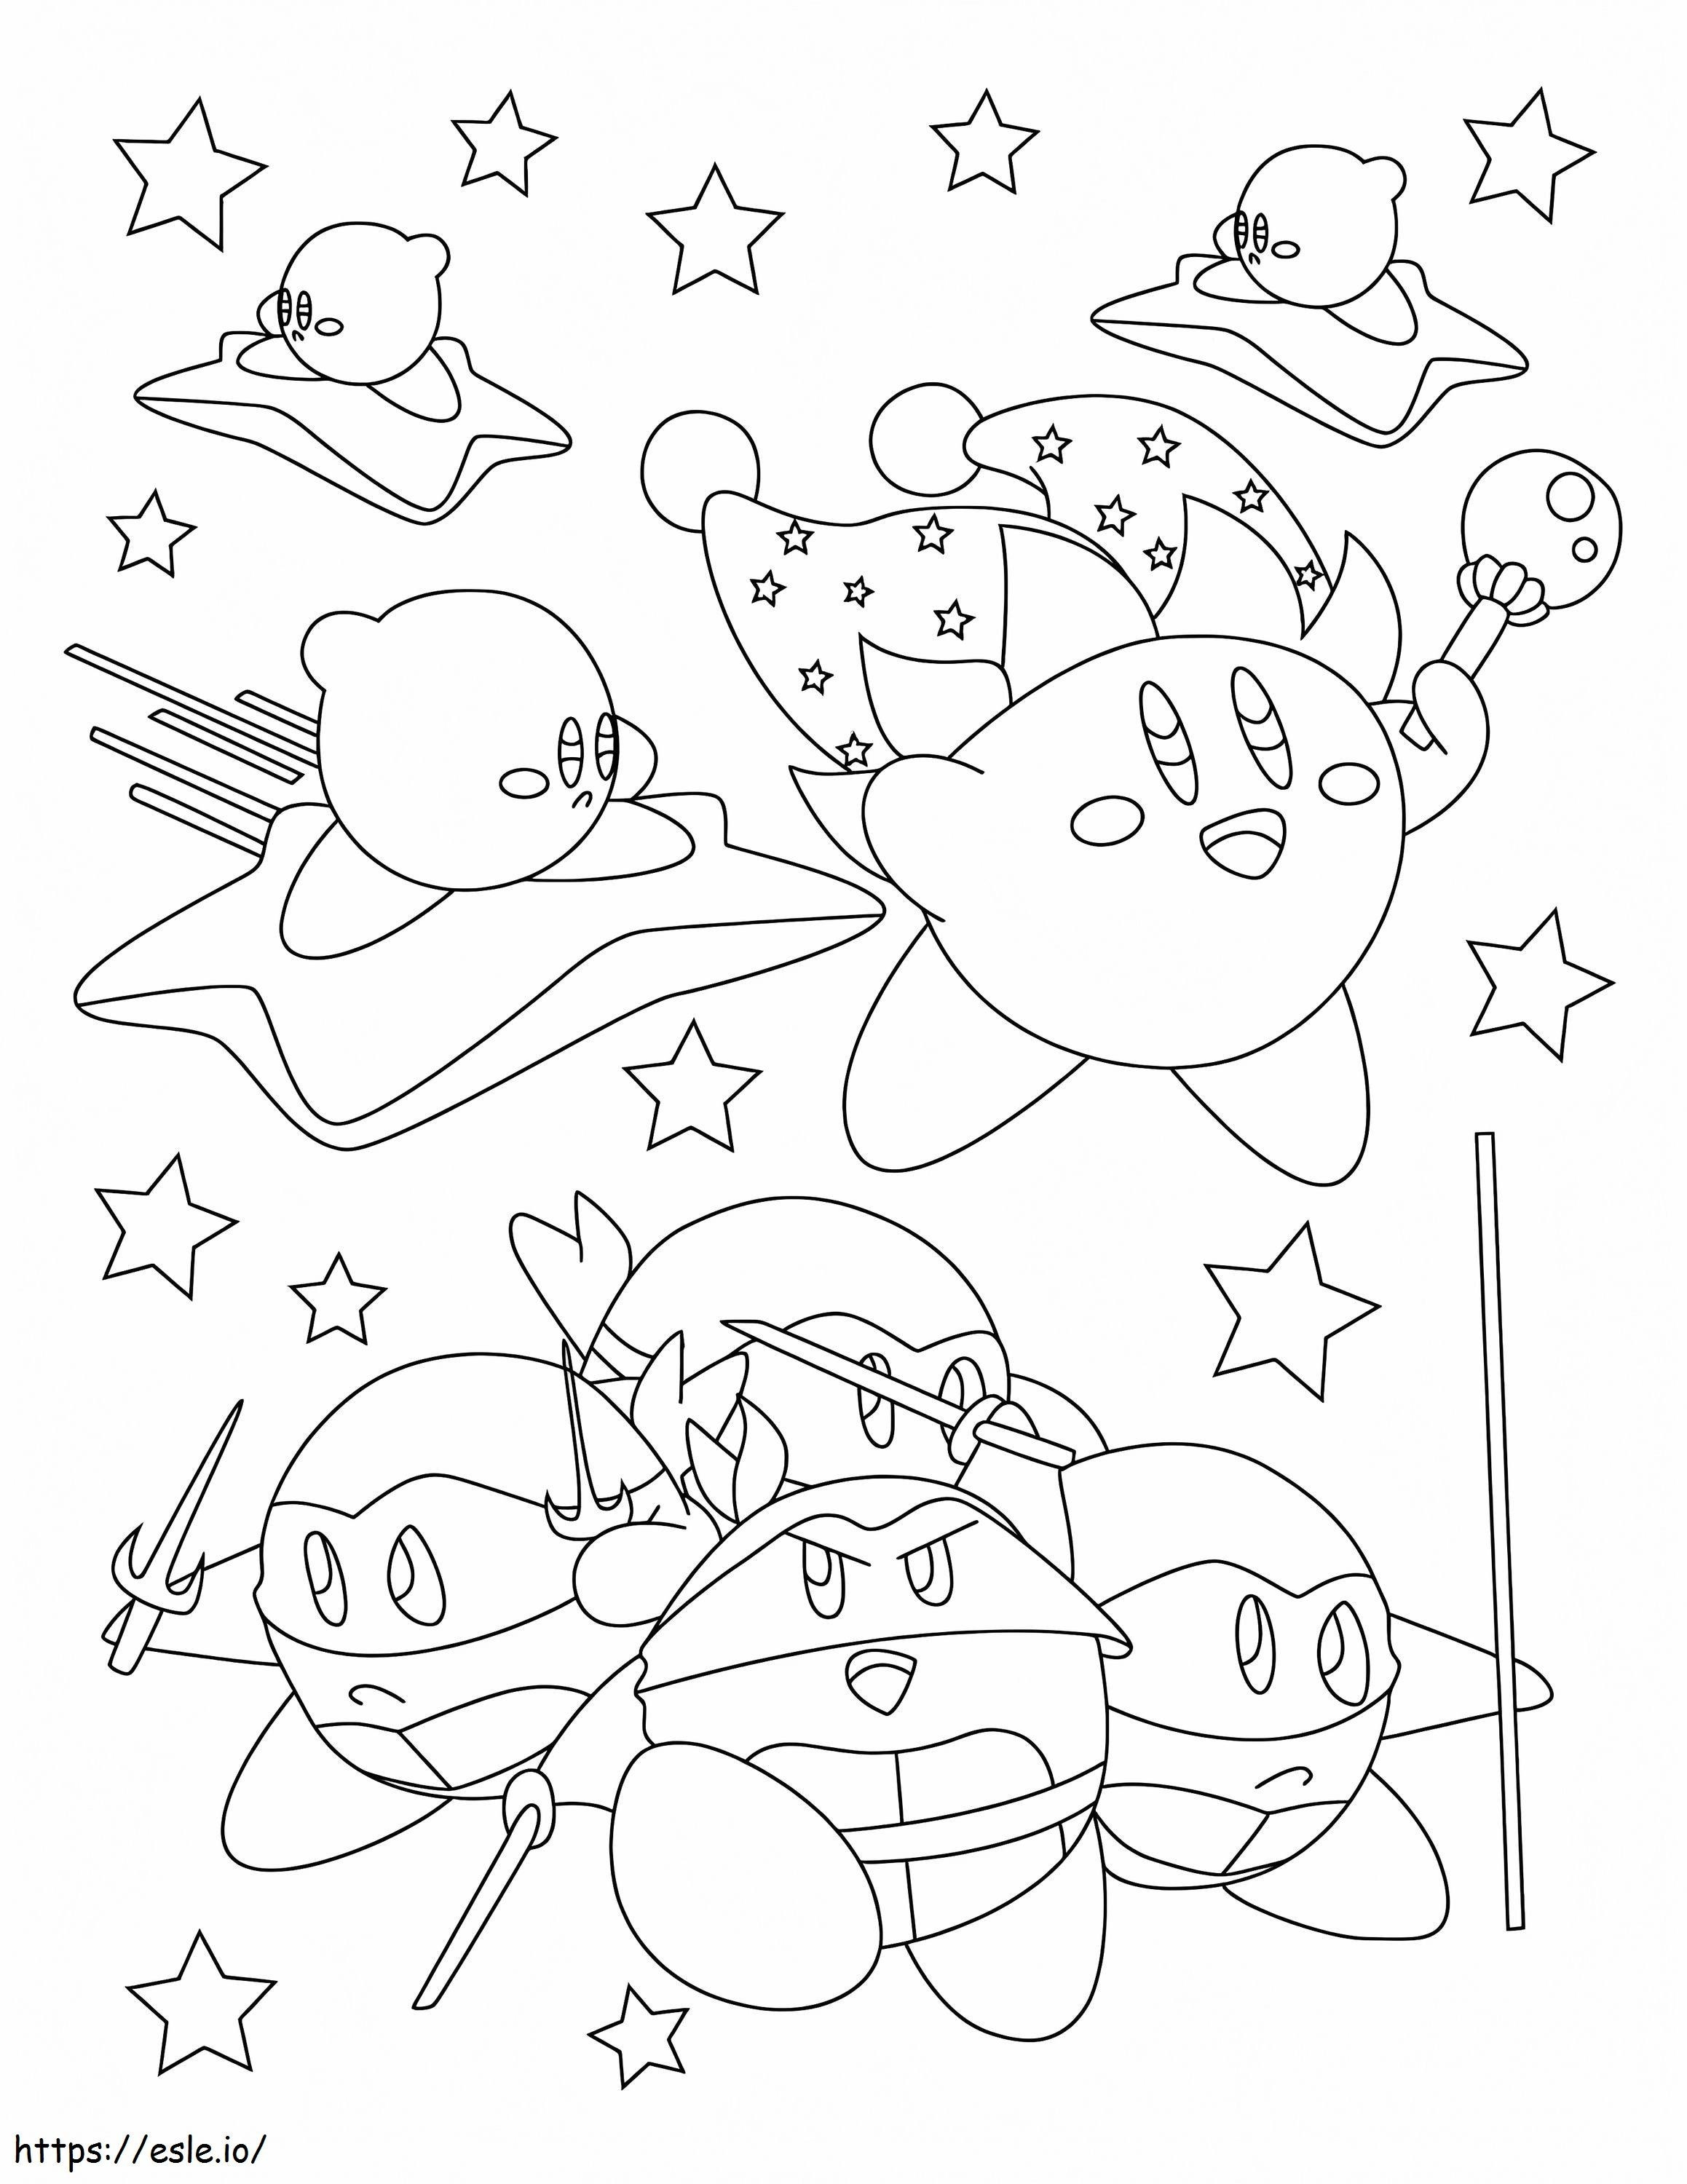 Kirby perfeito para colorir